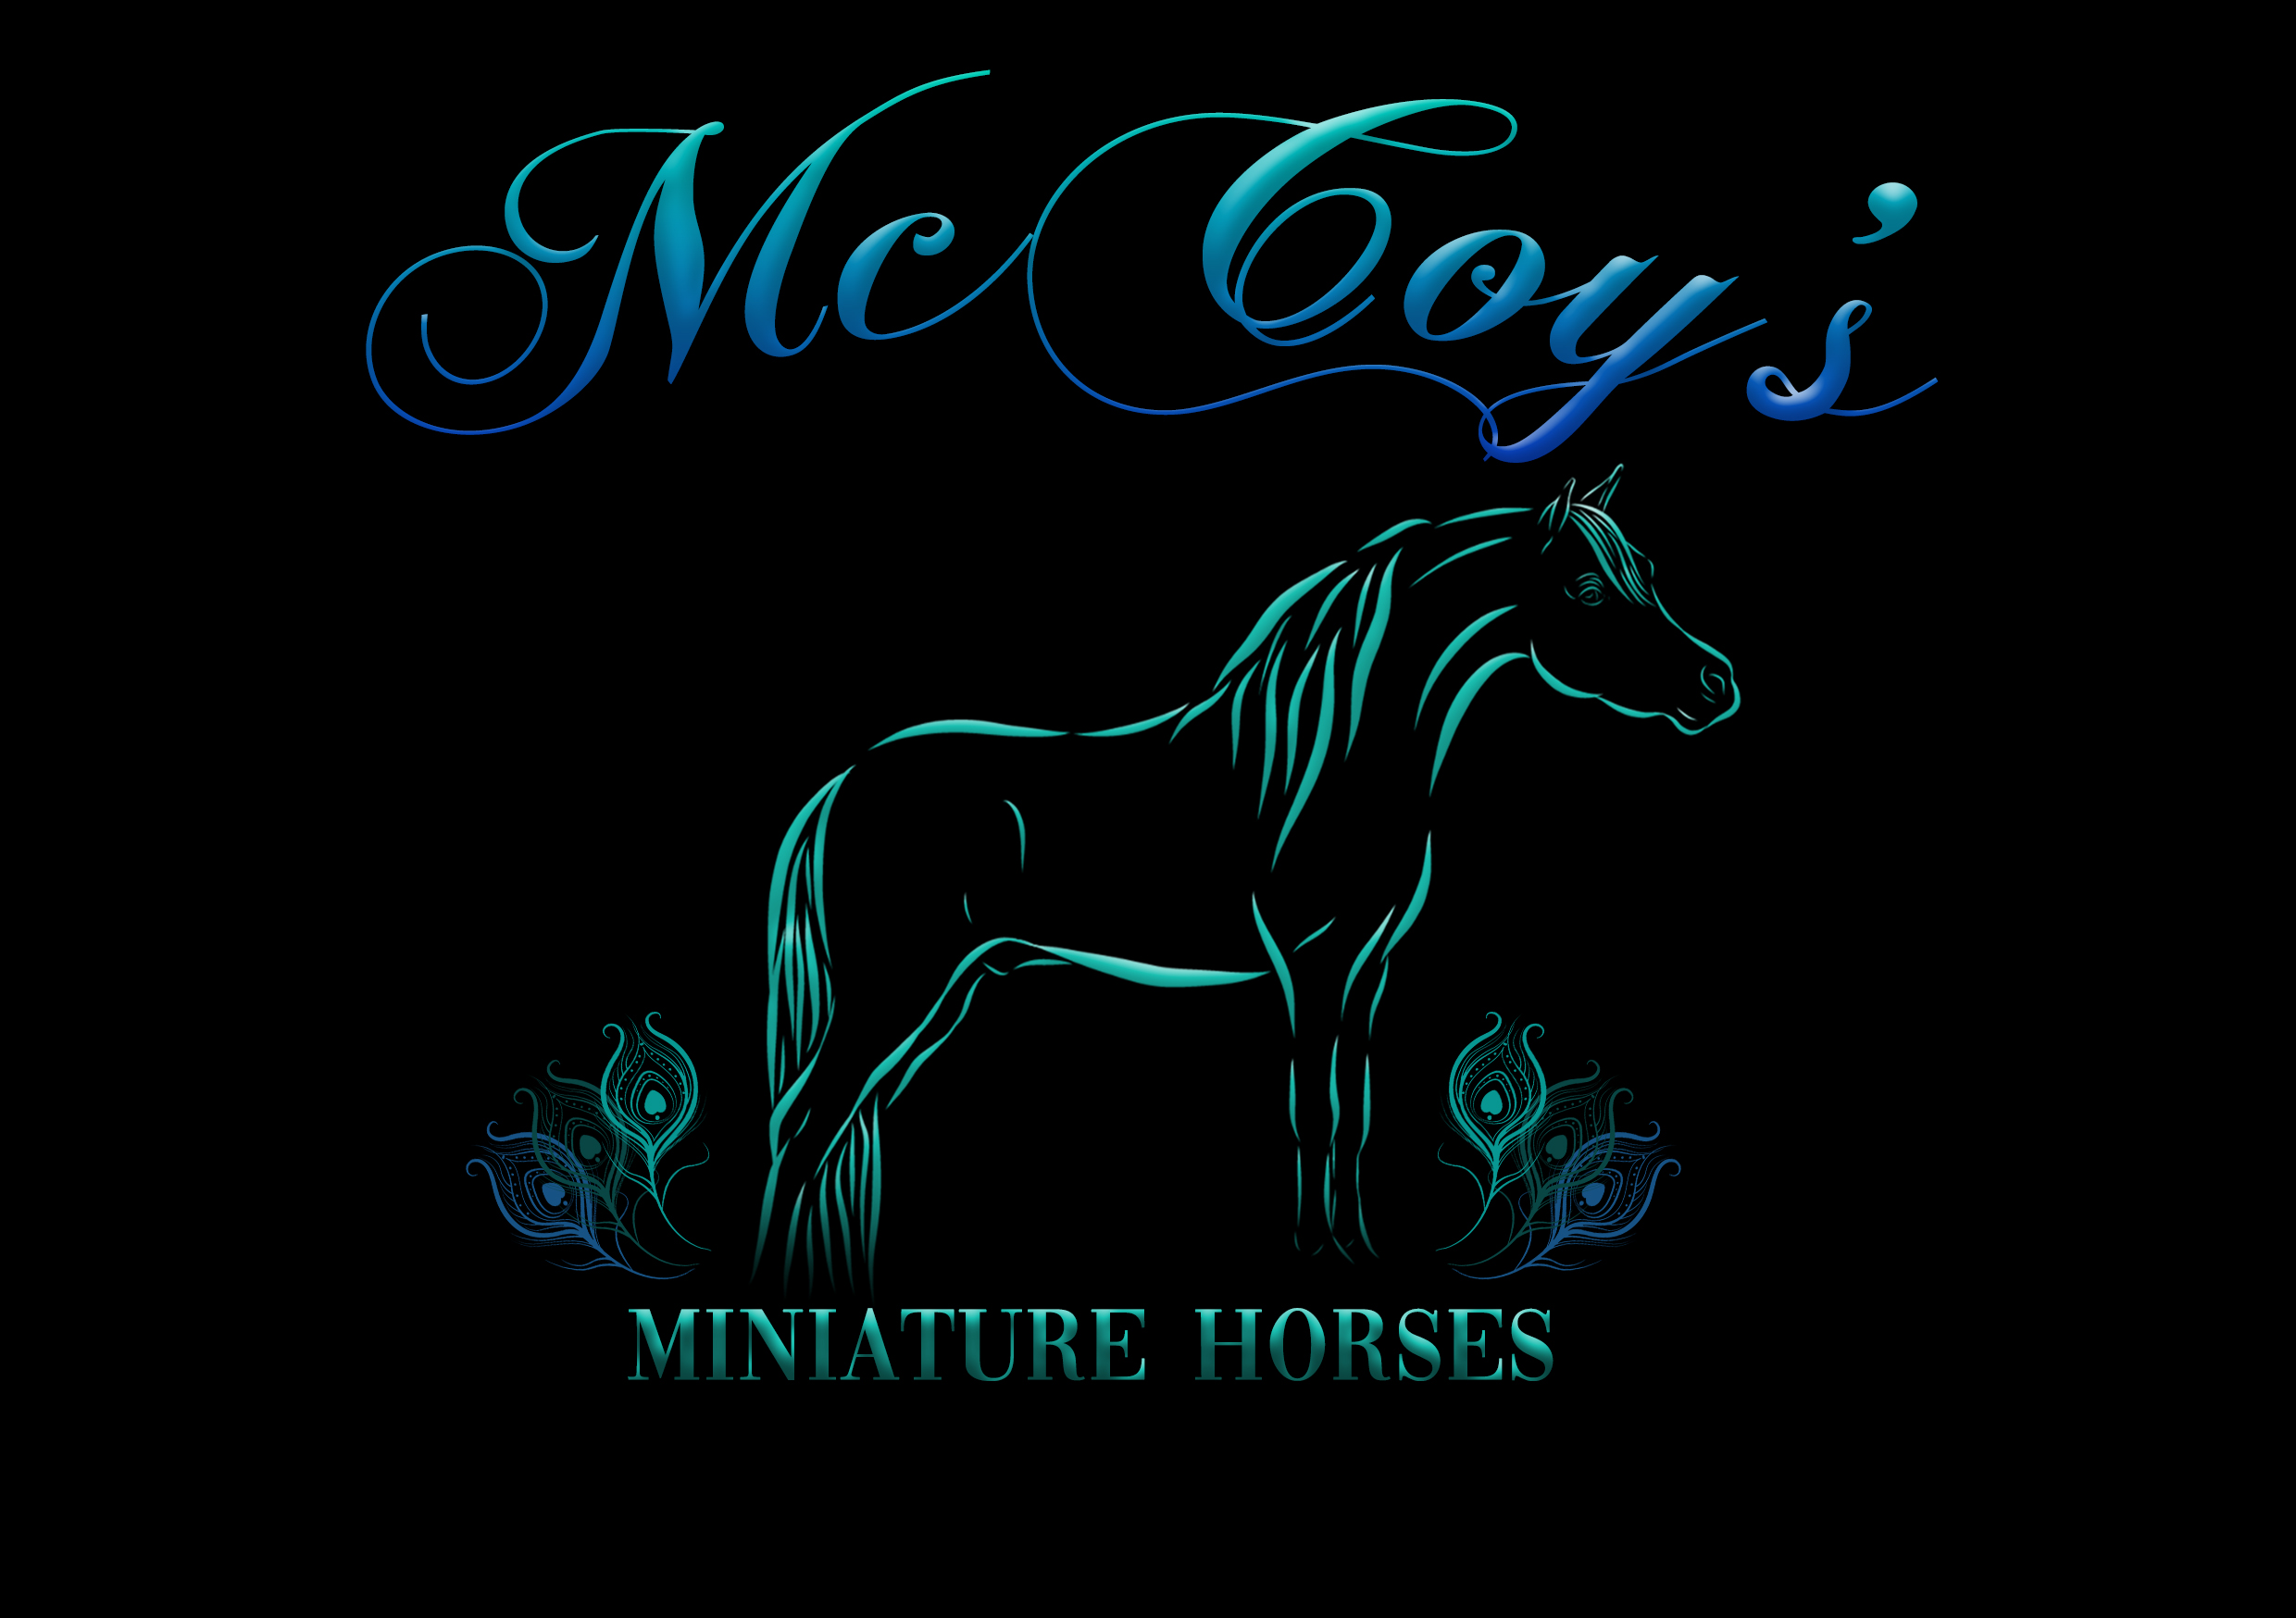 McCoy's Miniature Horses